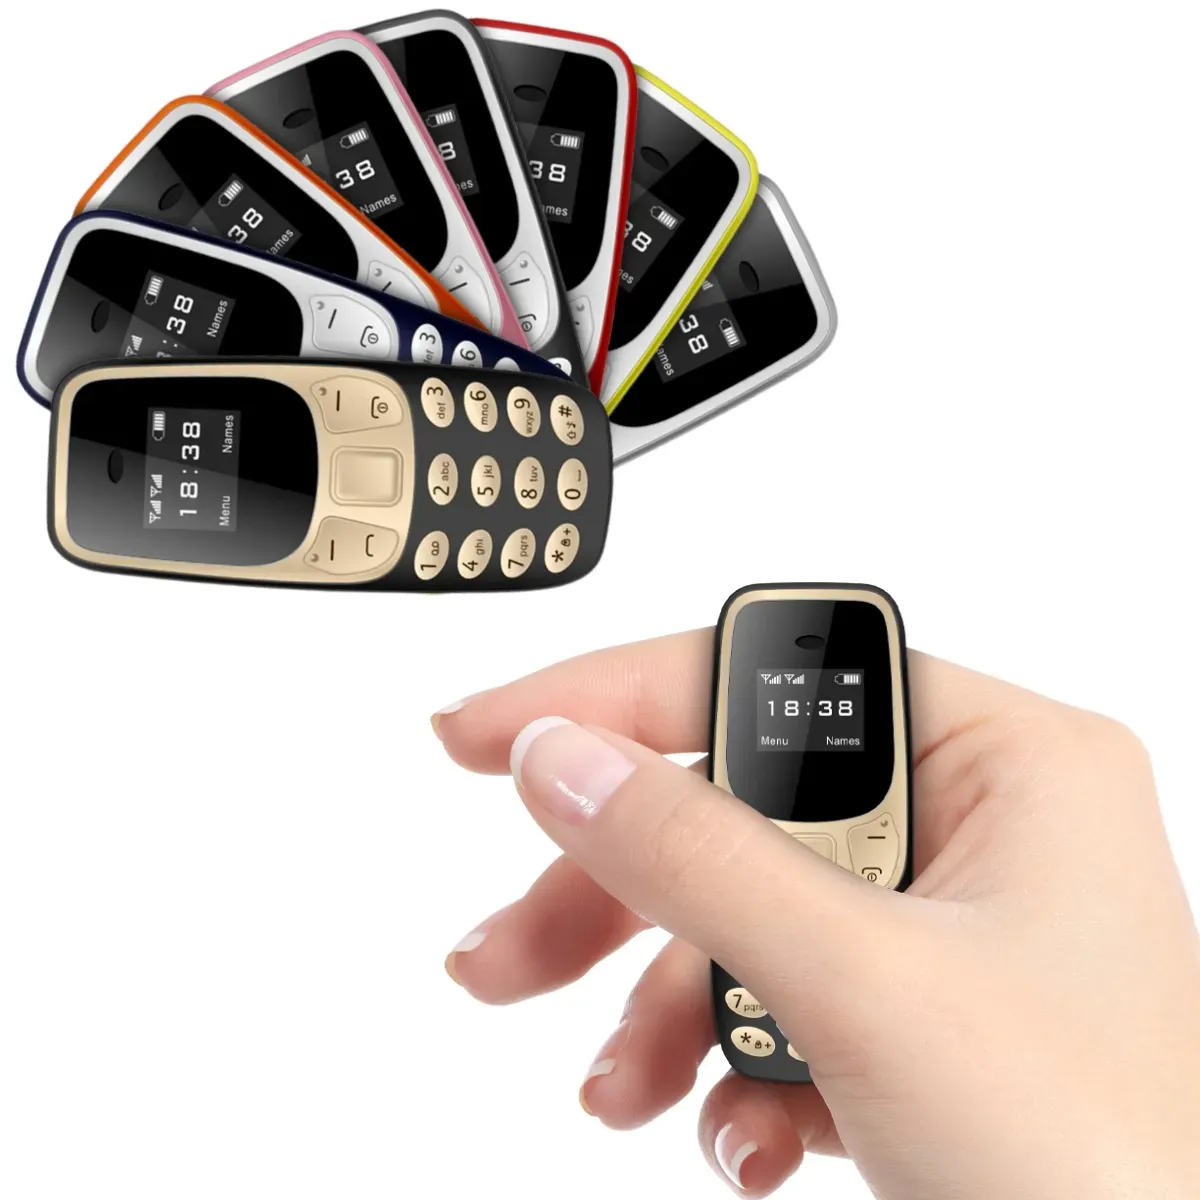 هاتف محمول صغير بسعر الجملة مزود بتقنية البلوتوث وجهاز اتصال سحري للصوت منخفض الإشعاع هاتف محمول صغير لتسجيل المكالمات مزود بشريحتين GSM